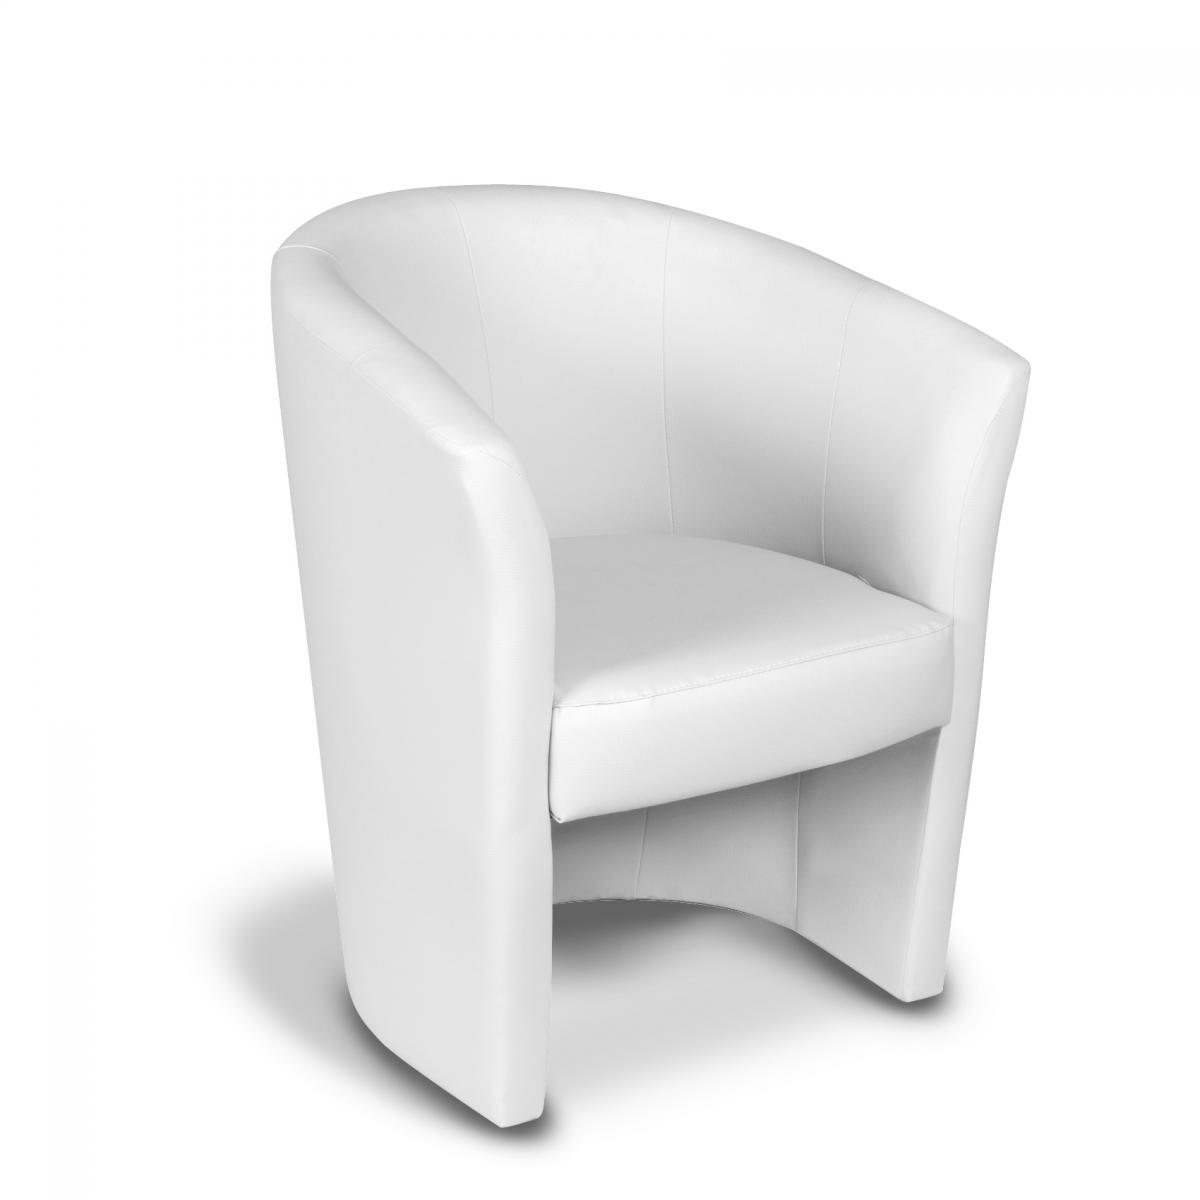 alter fauteuil avec revêtement en éco-cuir, couleur blanche, 65 x 78 x 60 cm  blanc